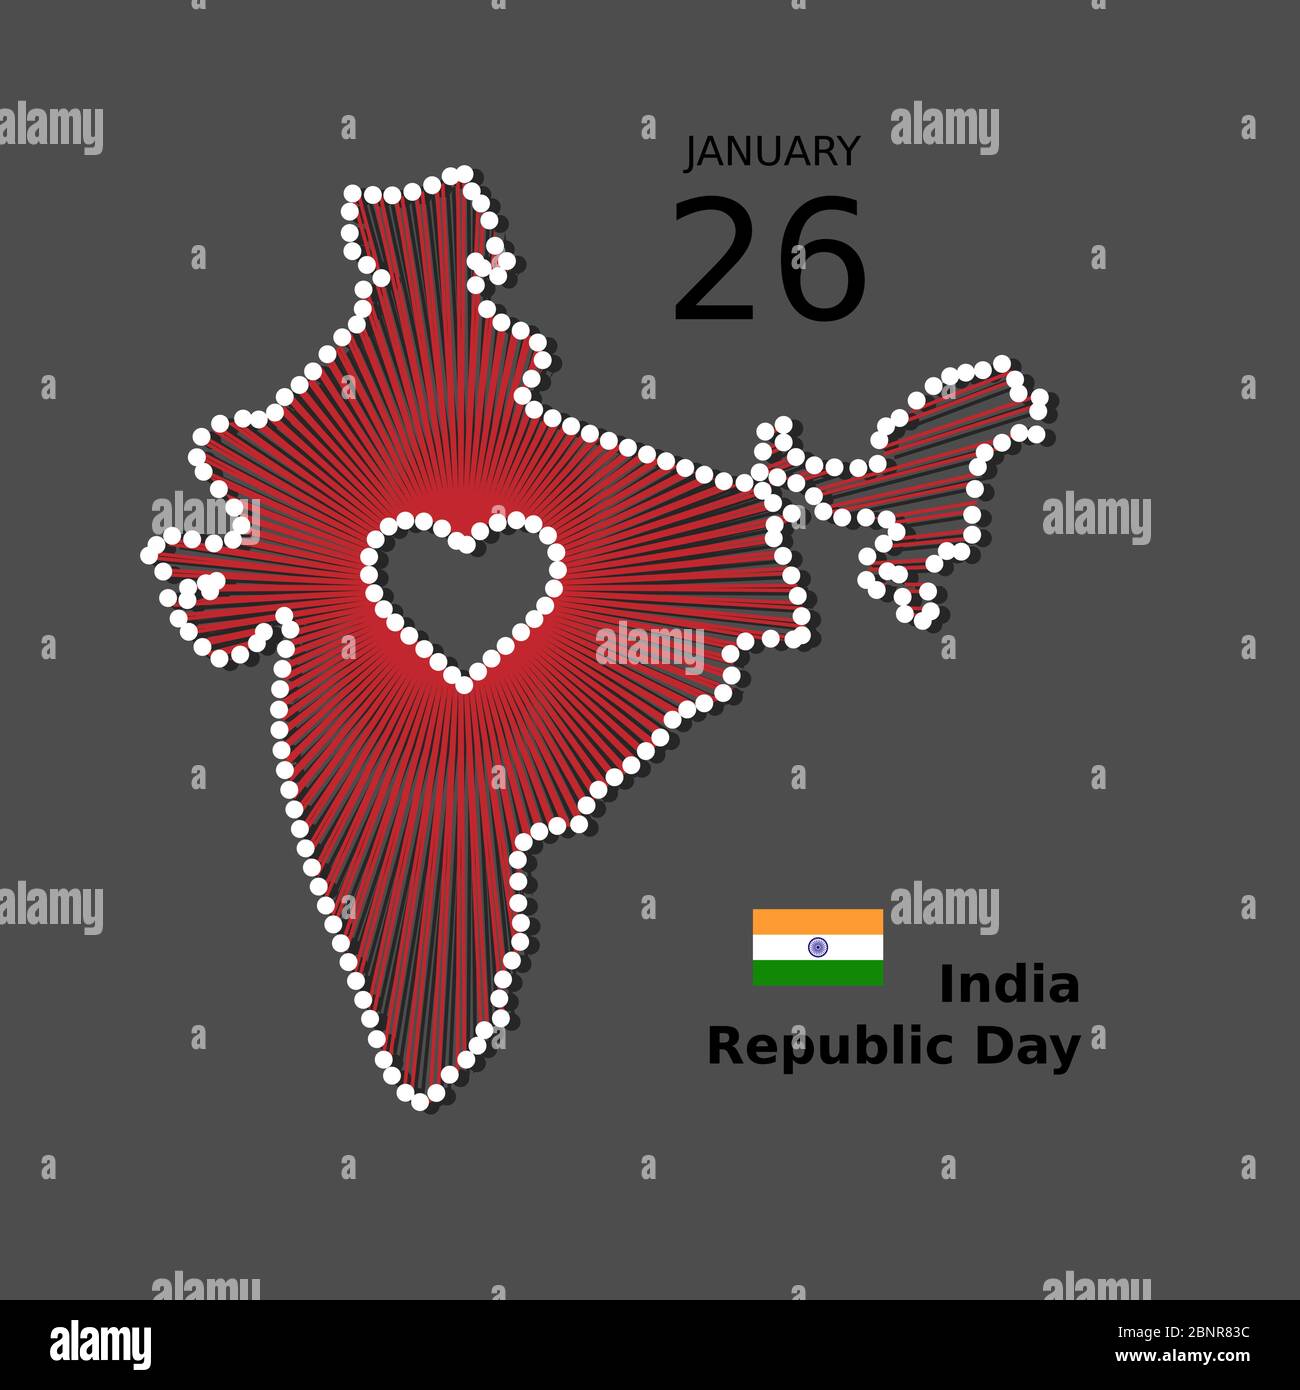 Indien Happy Republic Day Vektor-Poster, Hintergrund, Banner. Patriotische Darstellung der Einheit Indiens mit Karte, Flagge, Herz Stock Vektor